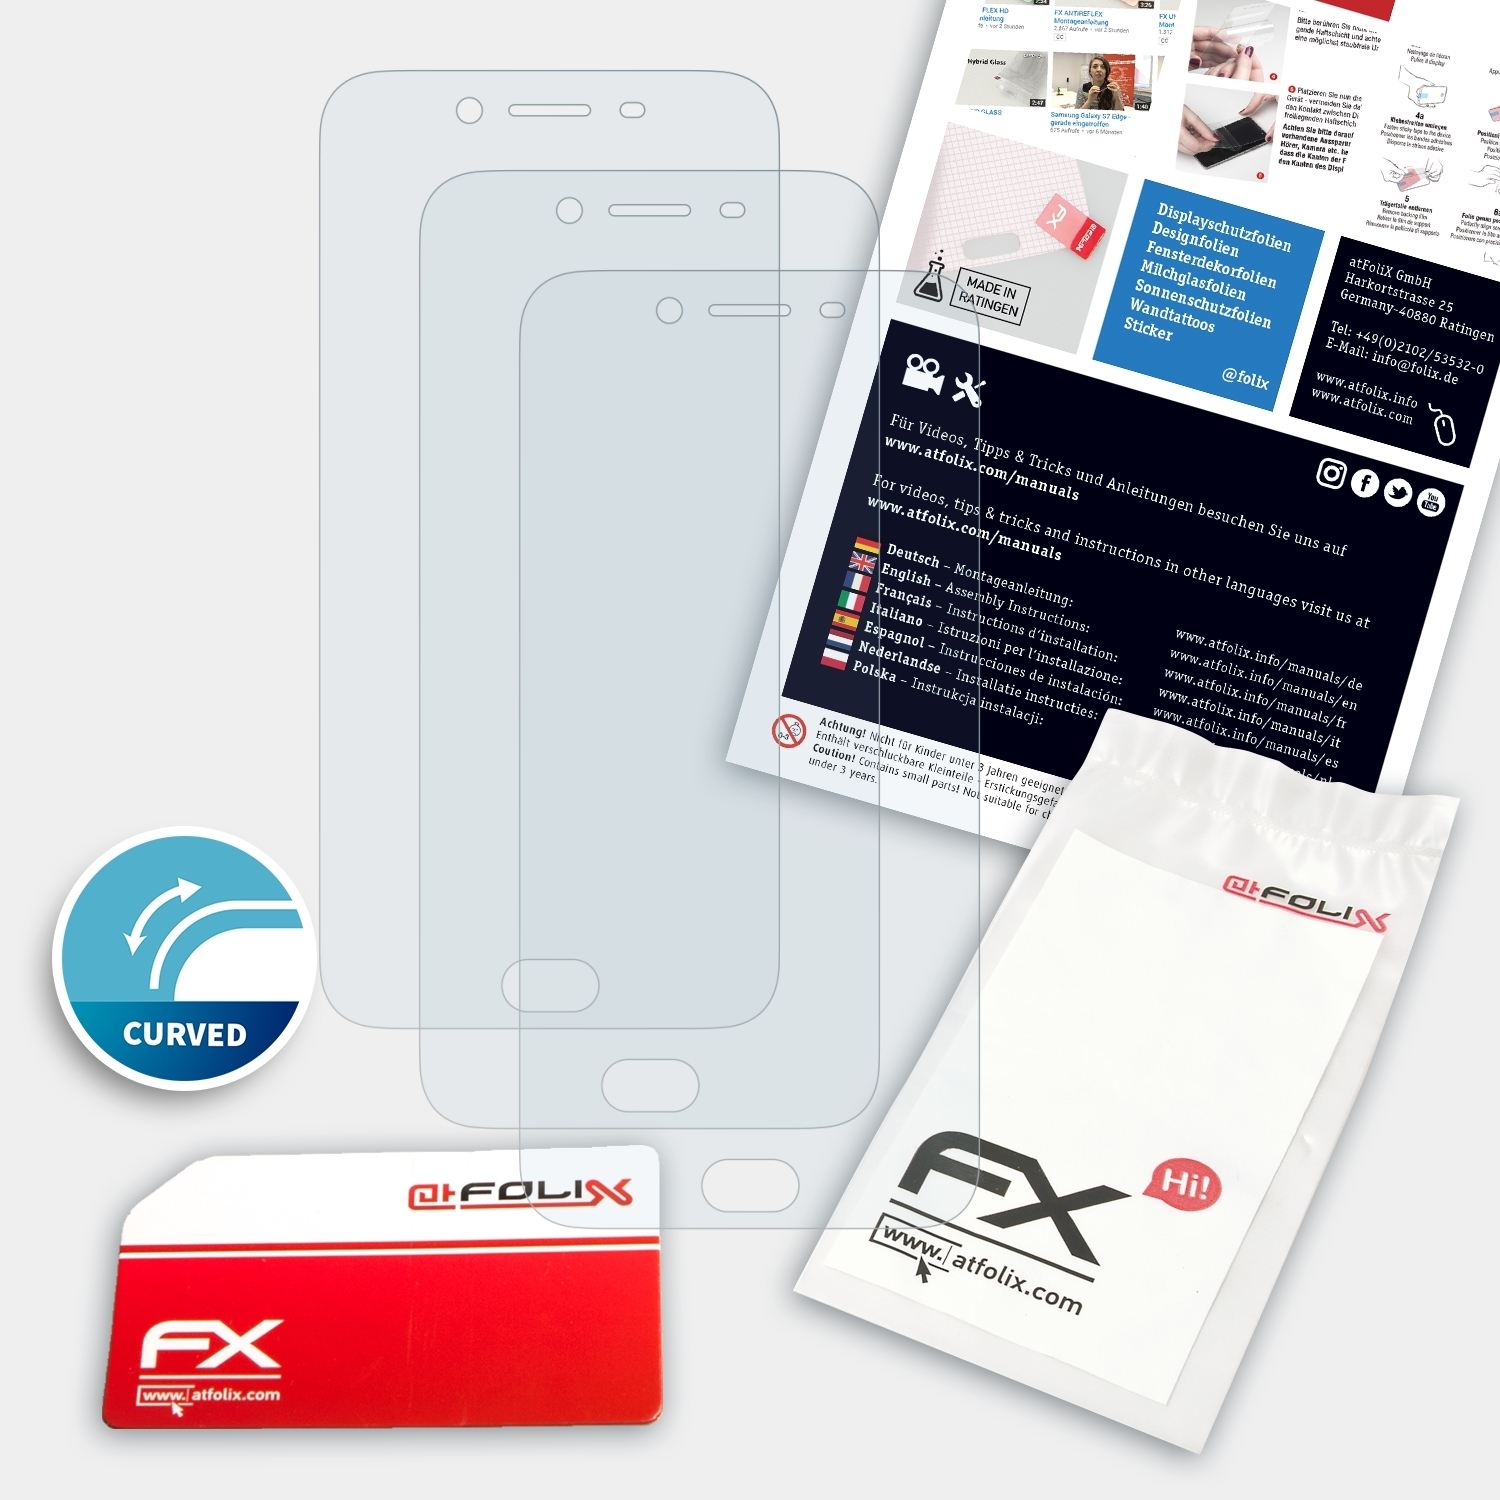 ATFOLIX R9s FX-ActiFleX Displayschutz(für 3x Plus) Oppo